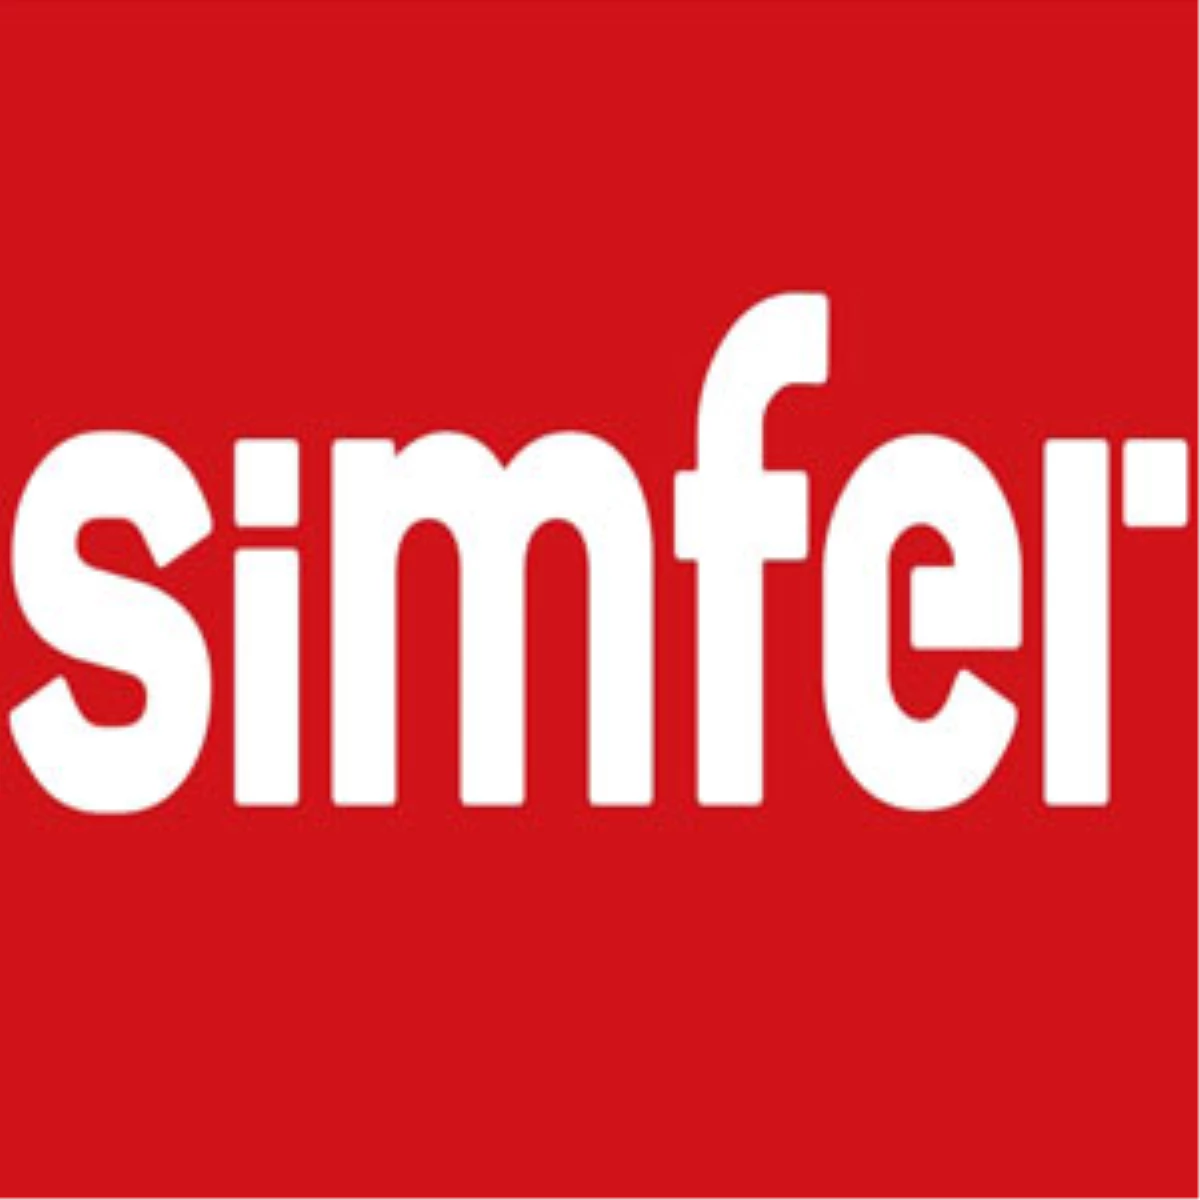 Simfer, Kitchen World 2012 Fuarı\'na A Enerji Sınıfı Ürünleri ile Katıldı